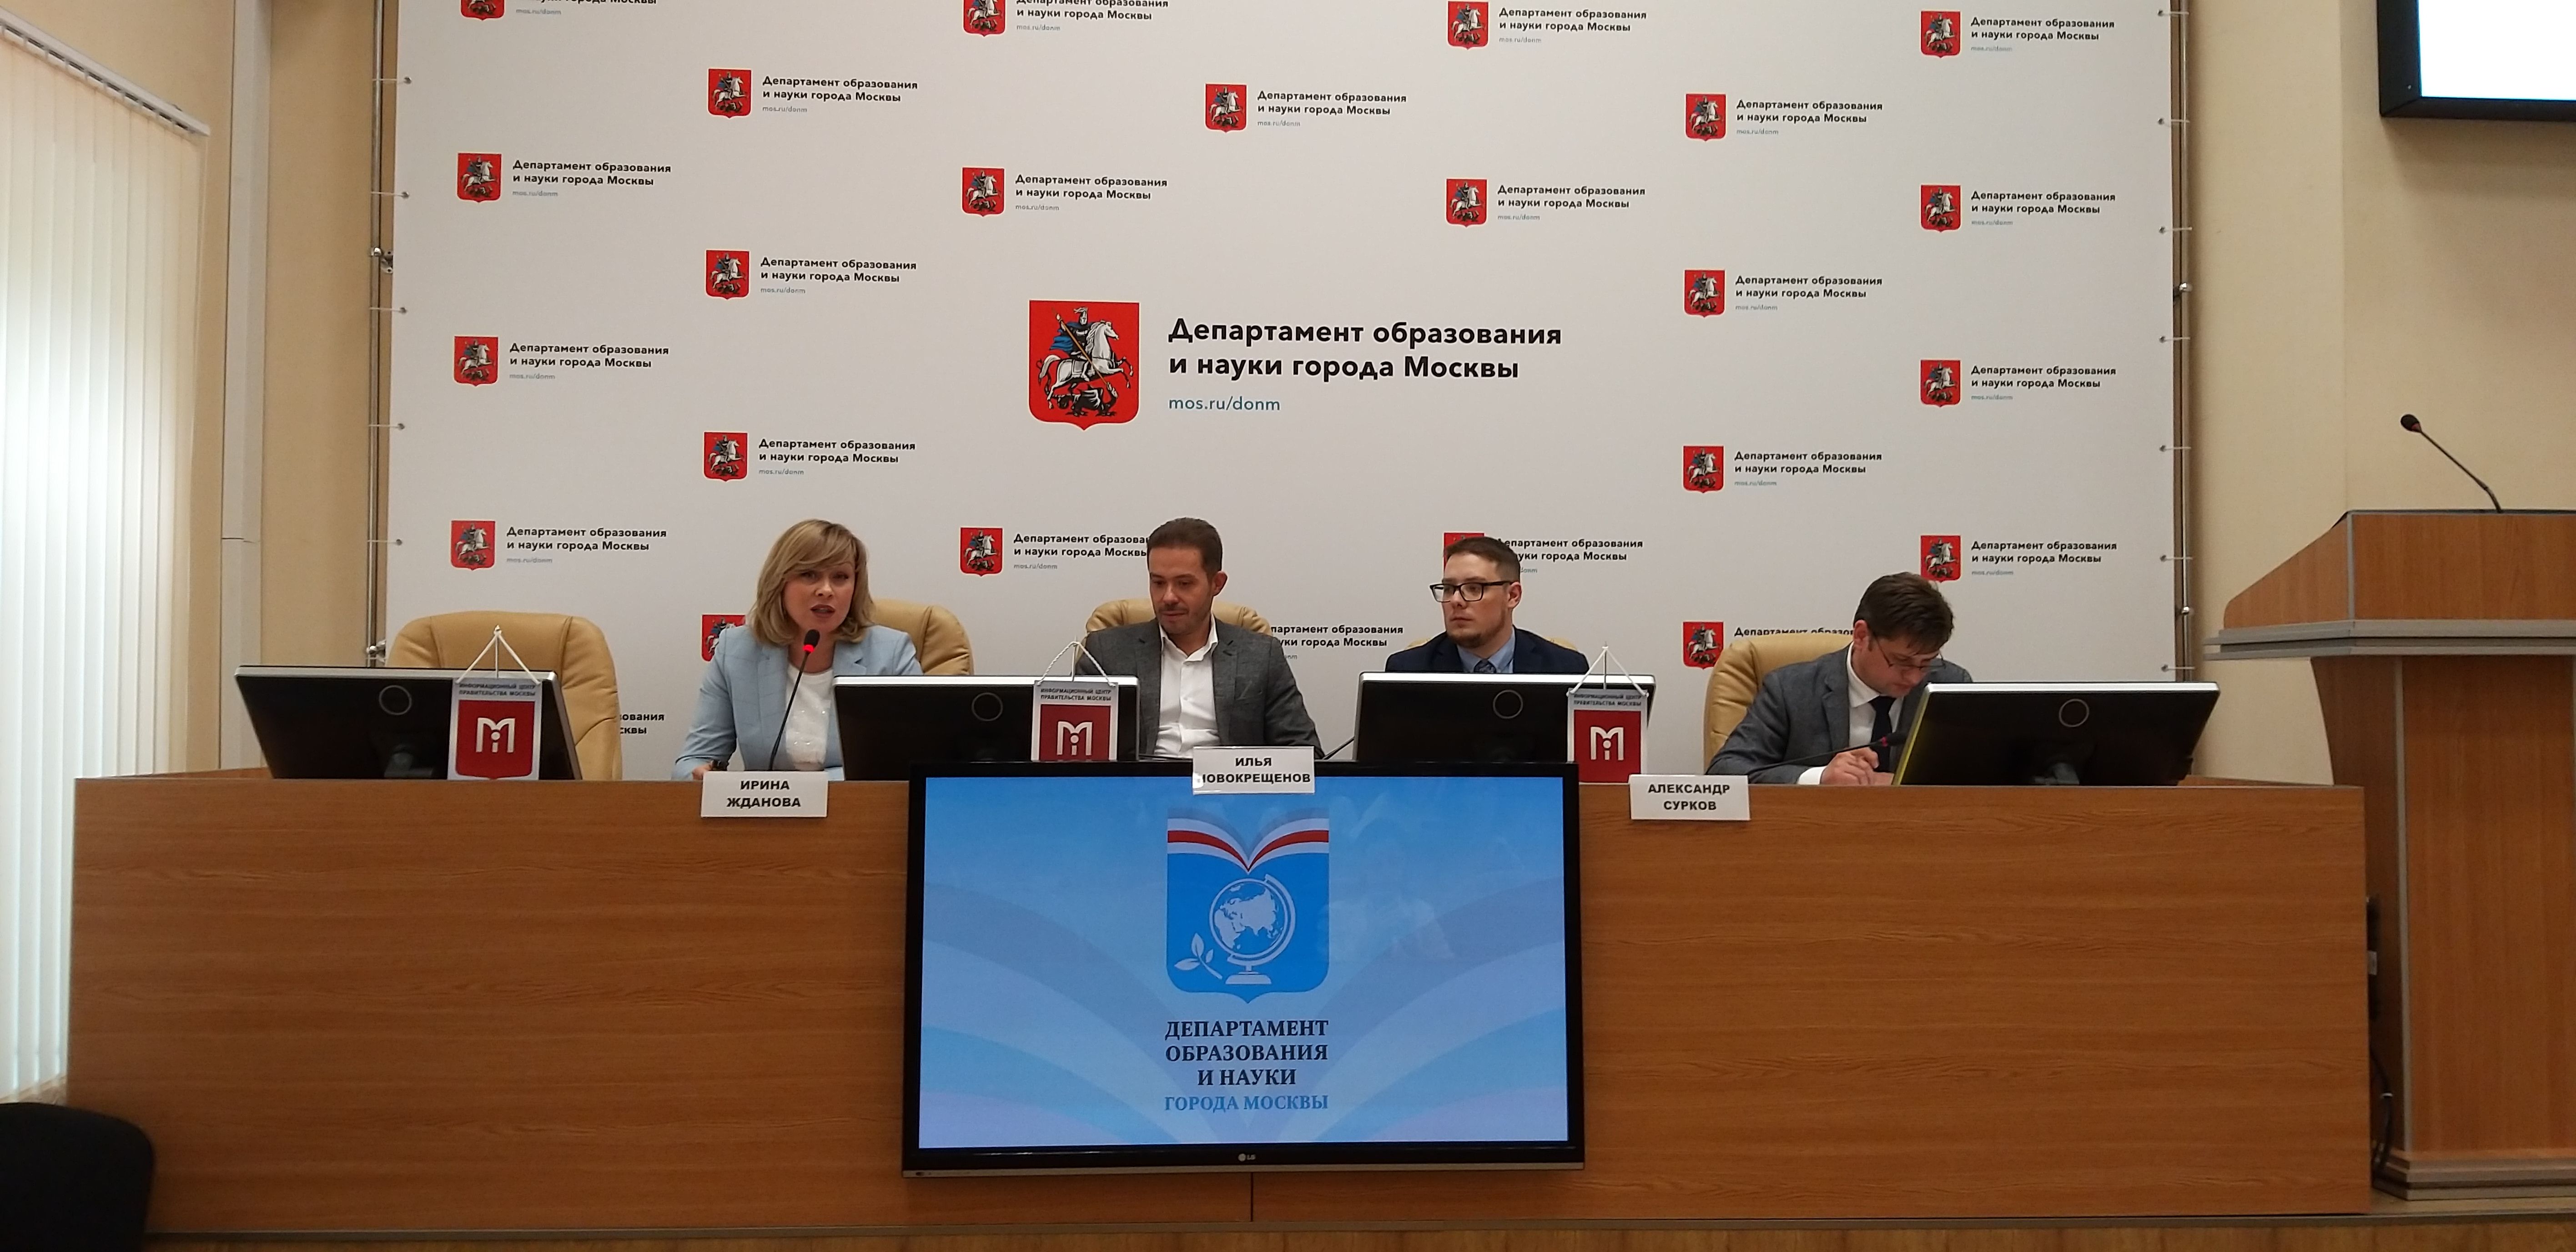 Пресс-конференцию о Молодежном педагогическом совете провели в Москве. Фото: Виктория Чуранова